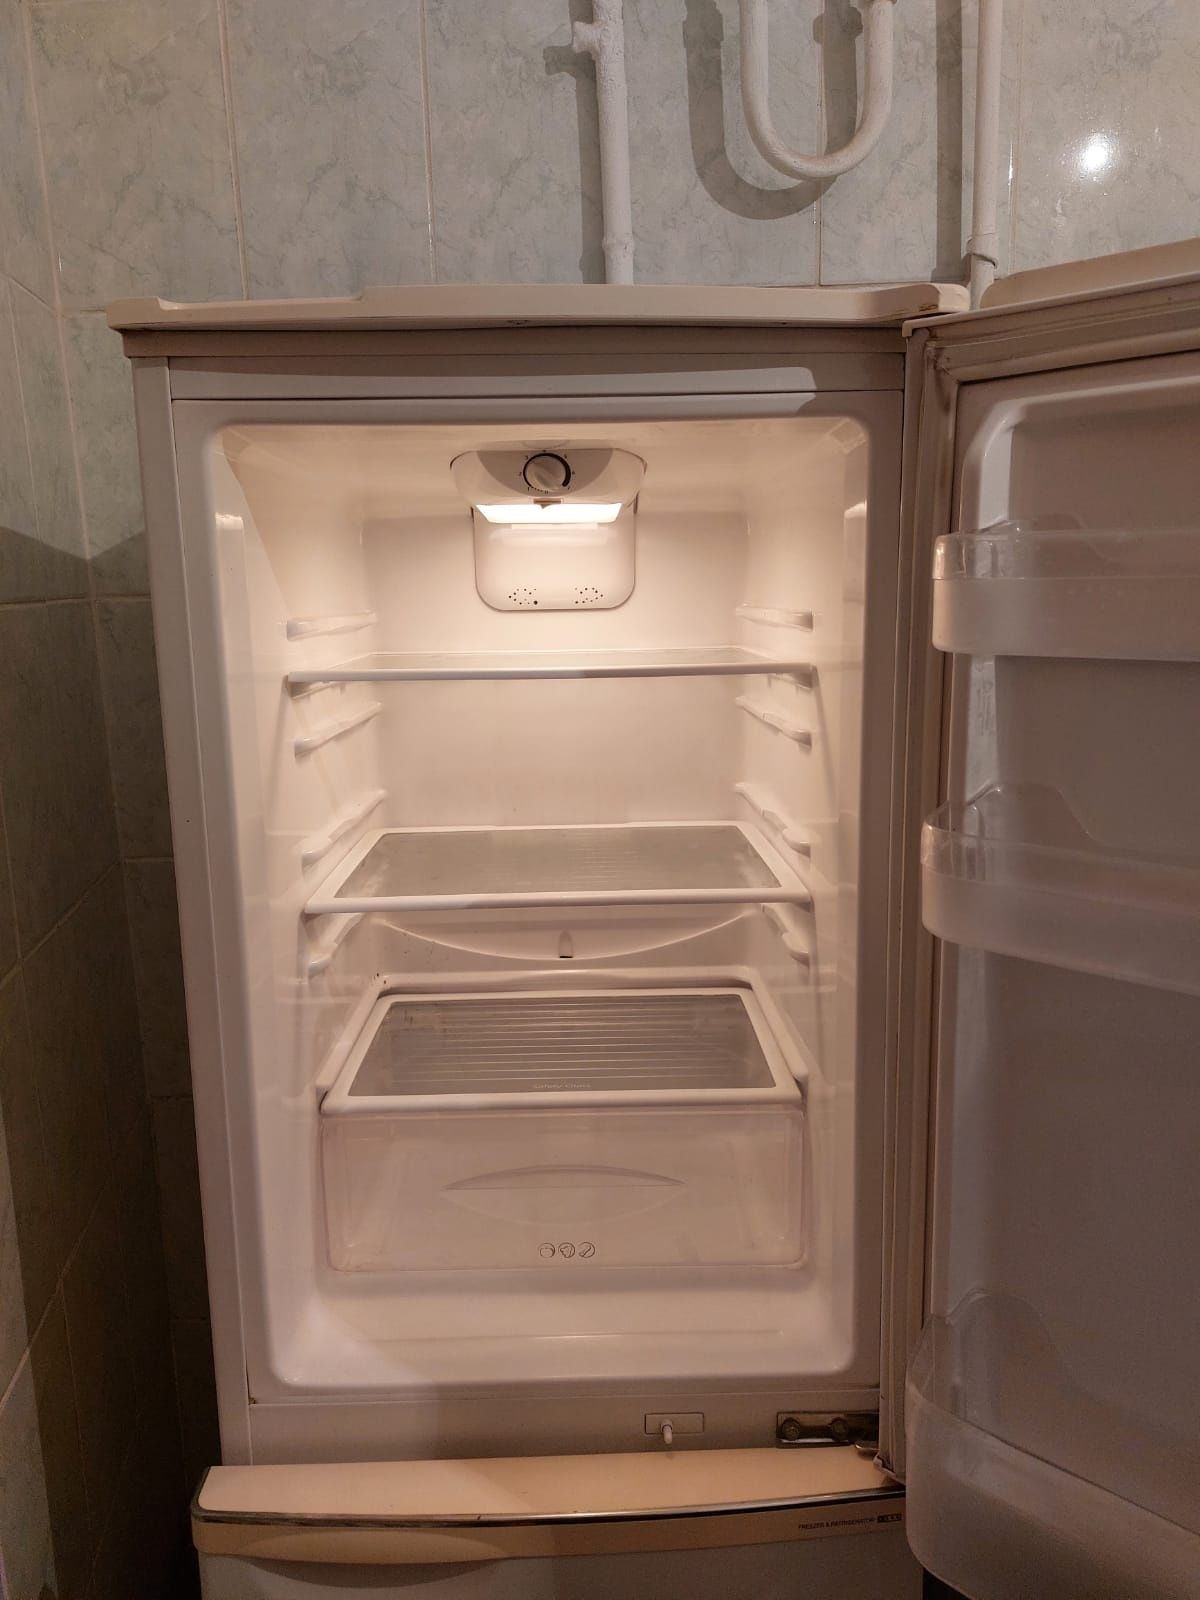 Холодильник не в рабочем состоянии